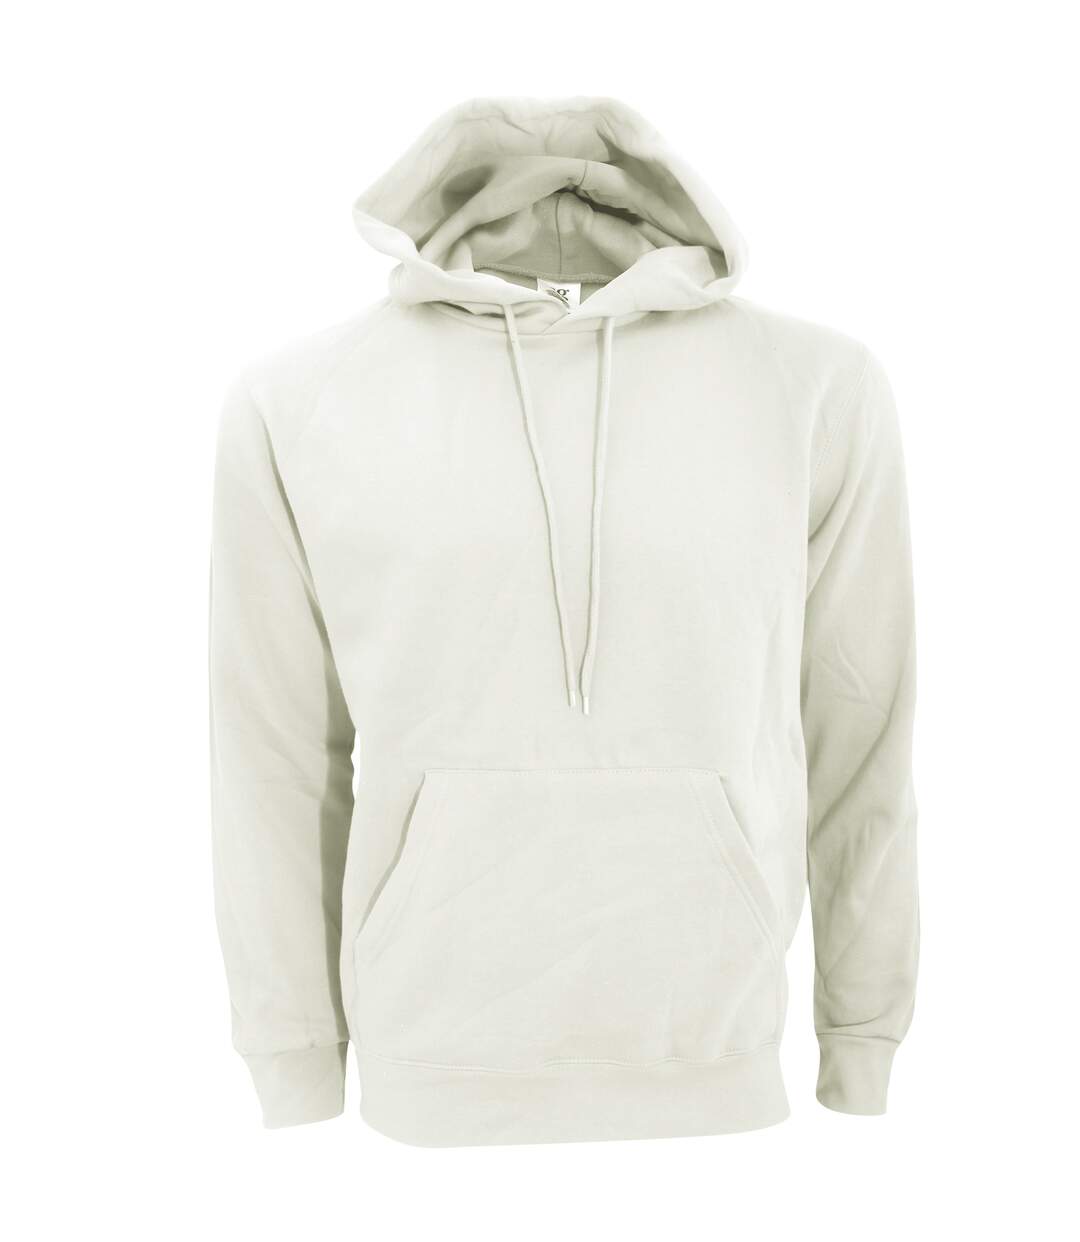 SG Mens Plain Hooded Sweatshirt Top / Hoodie / Sweatshirt (Birch) - UTBC1072